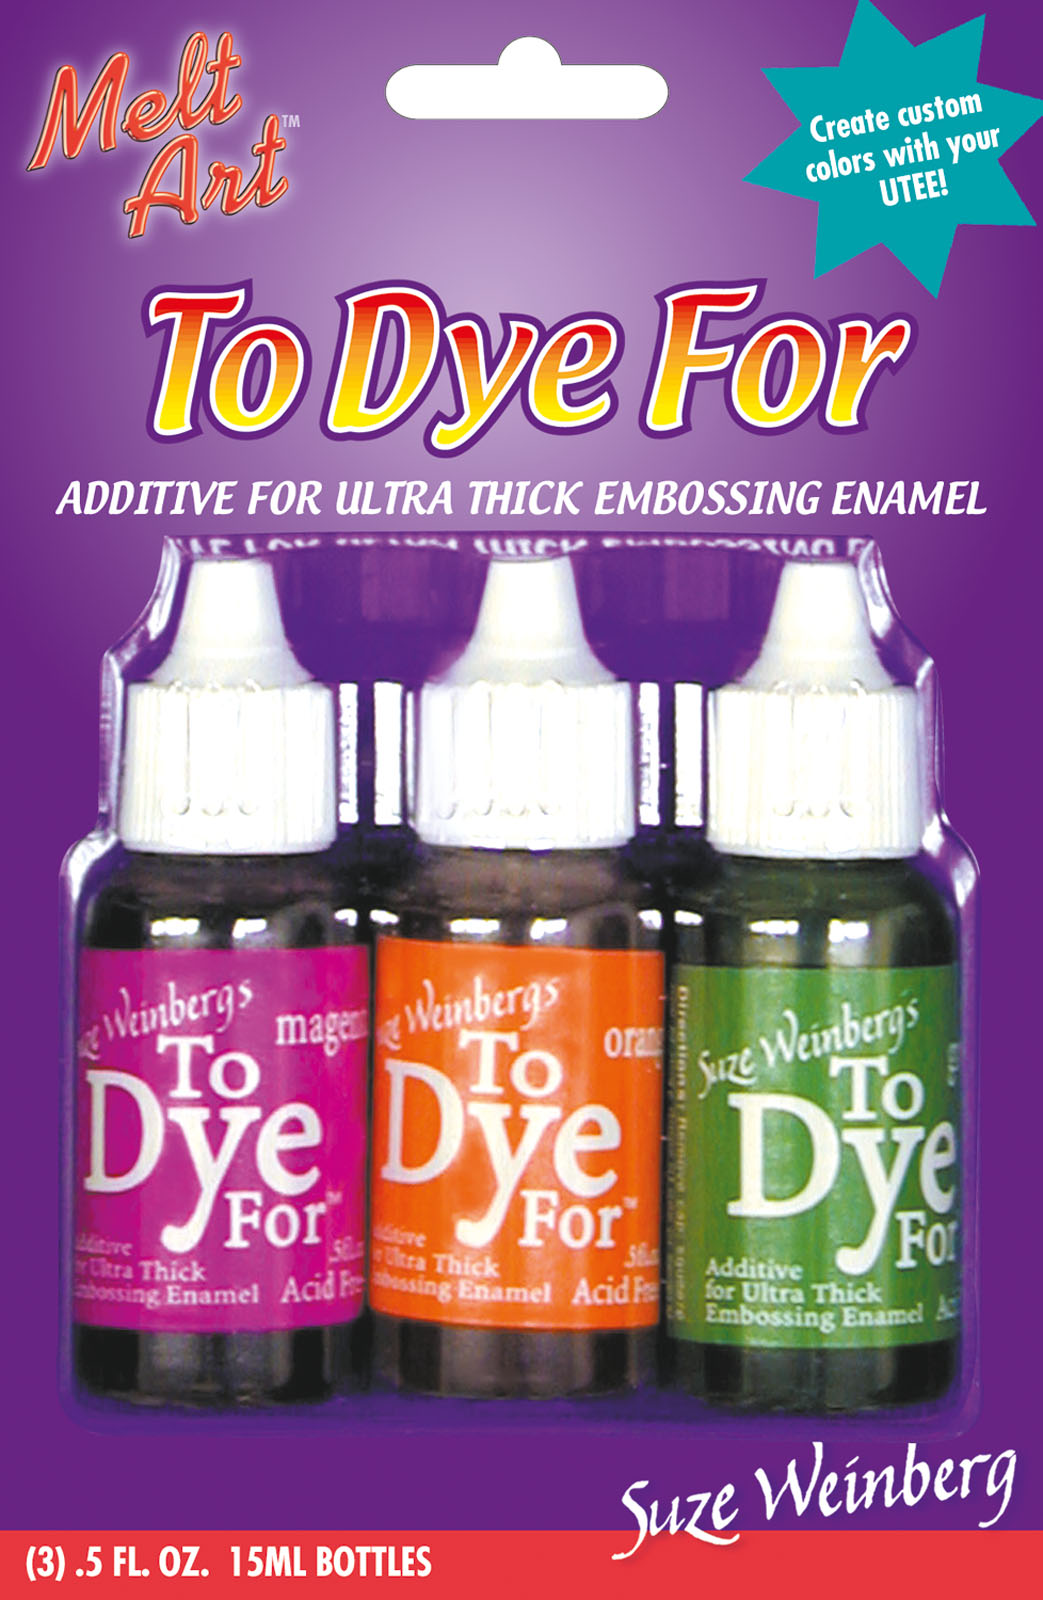 Melt art • To dye for additive for embossing enamal Hot